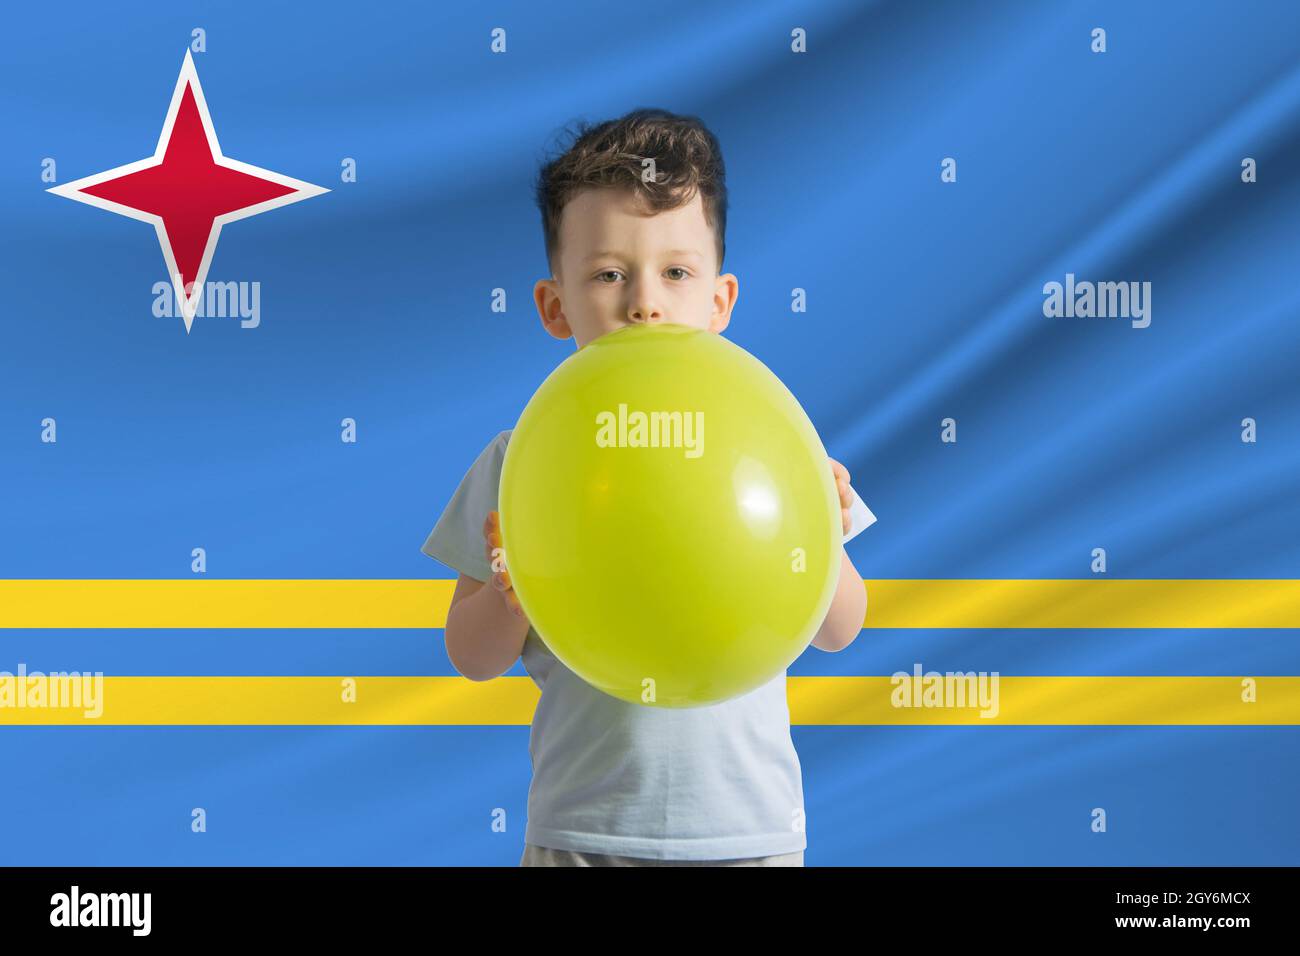 Kindertag auf Aruba. Weißer Junge mit einem Ballon auf dem Hintergrund der Flagge von Aruba. Kindertagesfeier Konzept. Stockfoto